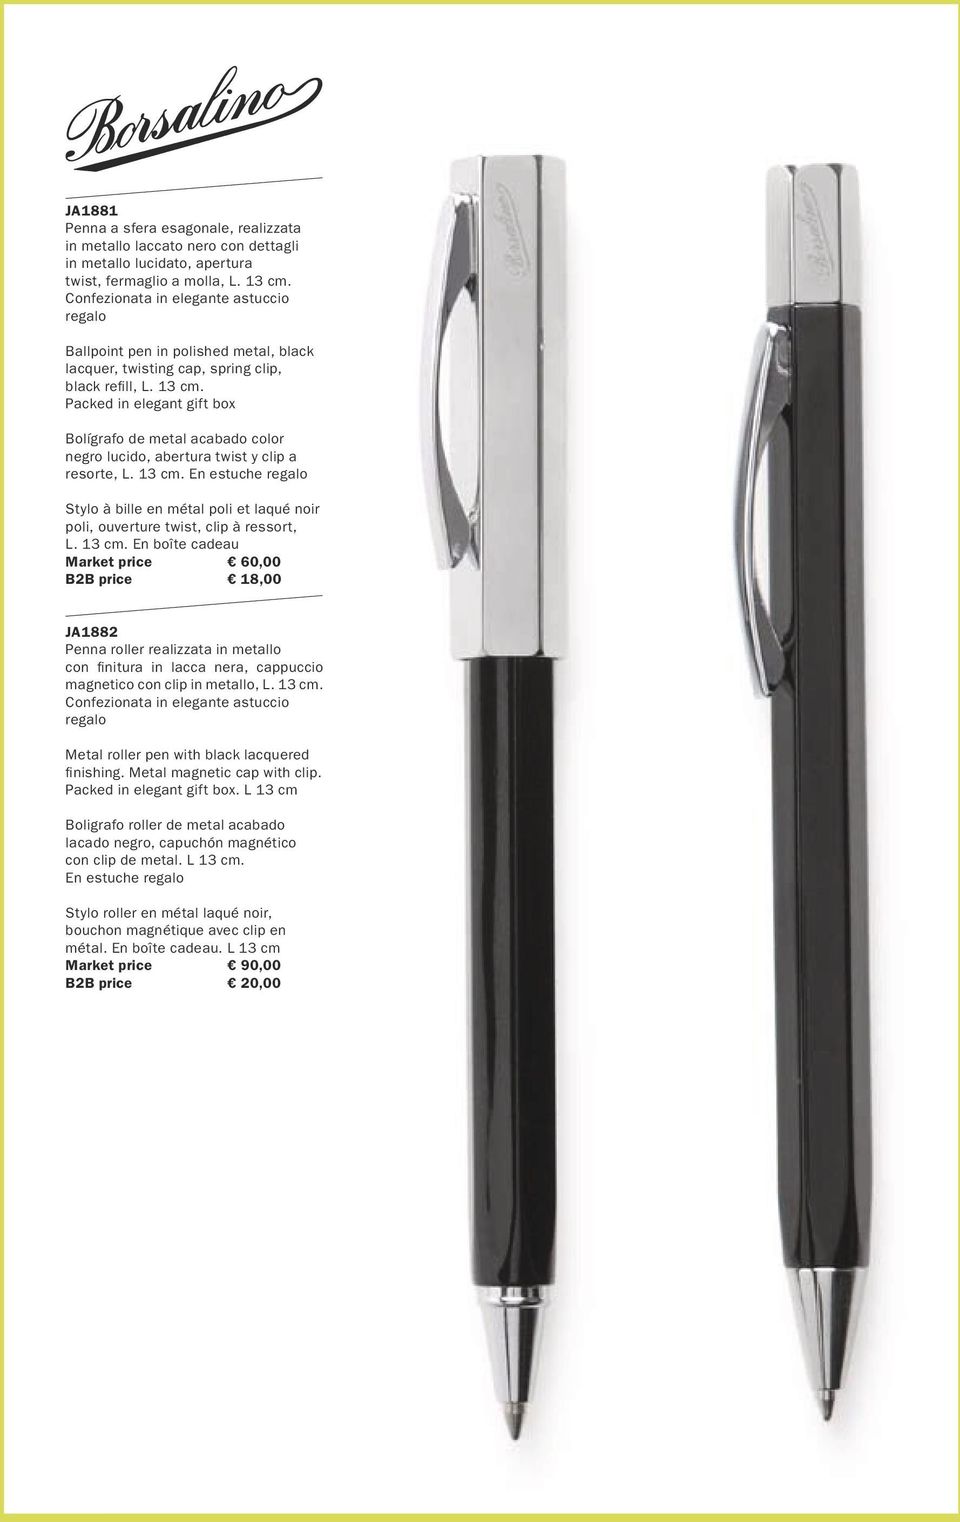 Packed in elegant gift box Bolígrafo de metal acabado color negro lucido, abertura twist y clip a resorte, L. 13 cm.